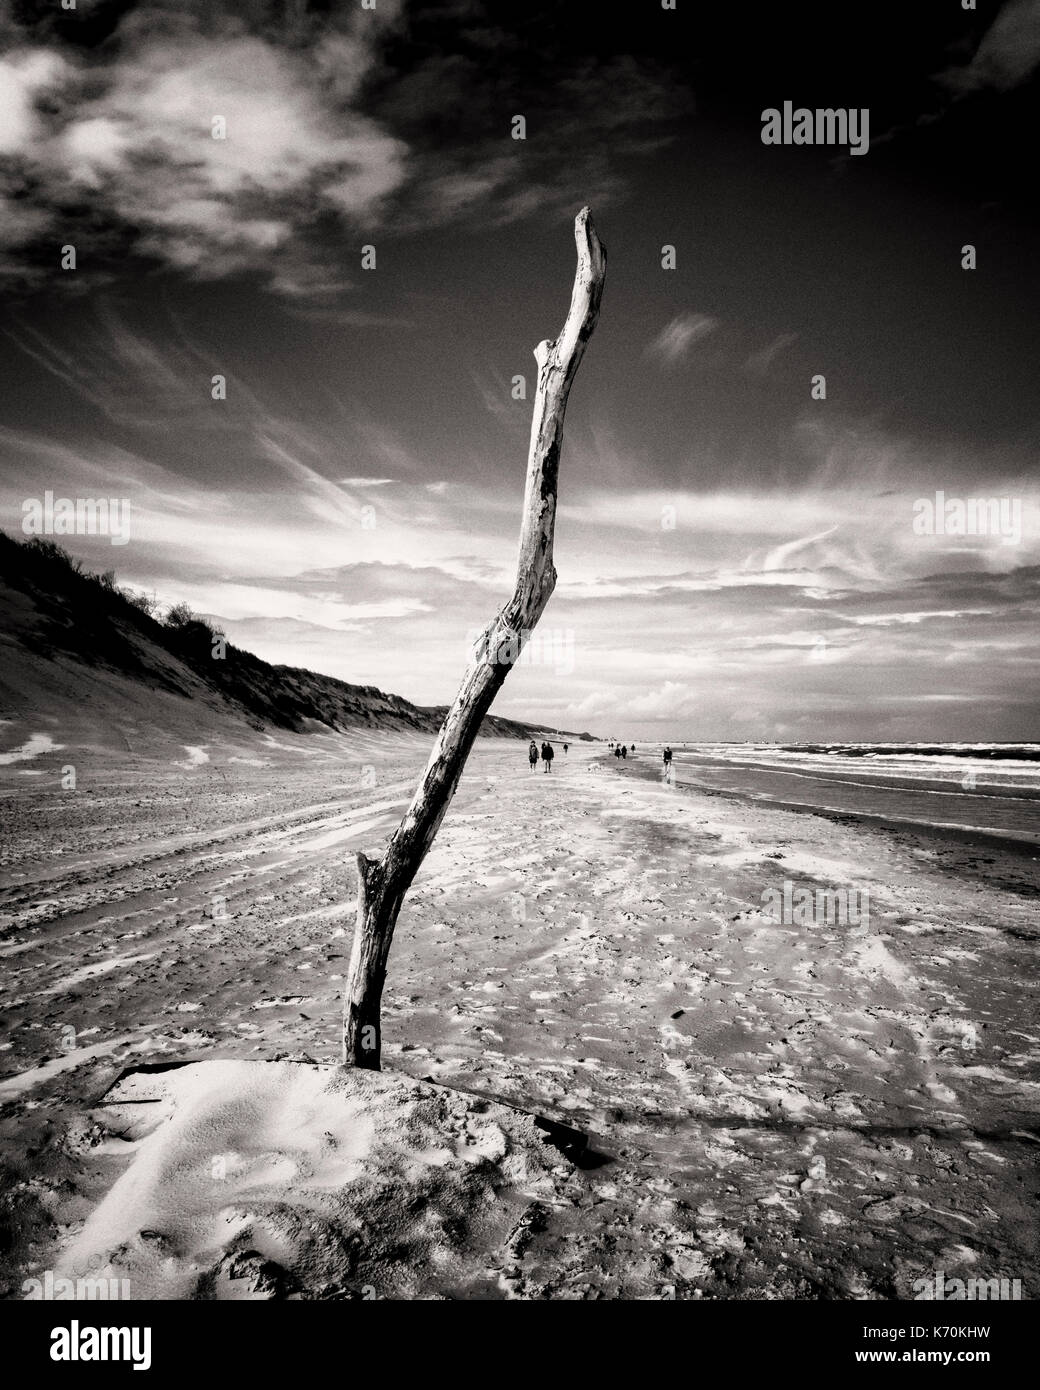 Langeoog, Alemania. Un pedazo de driftwood colocados en la arena de playa para stand-up tall y destacada contra el cielo. Vista mirando a lo largo de la playa de la costa con dunas de arena en un lado y ver en el otro. Los turistas parecen diminutas en la distancia mientras caminan a lo largo de la playa de arena. Foto de stock